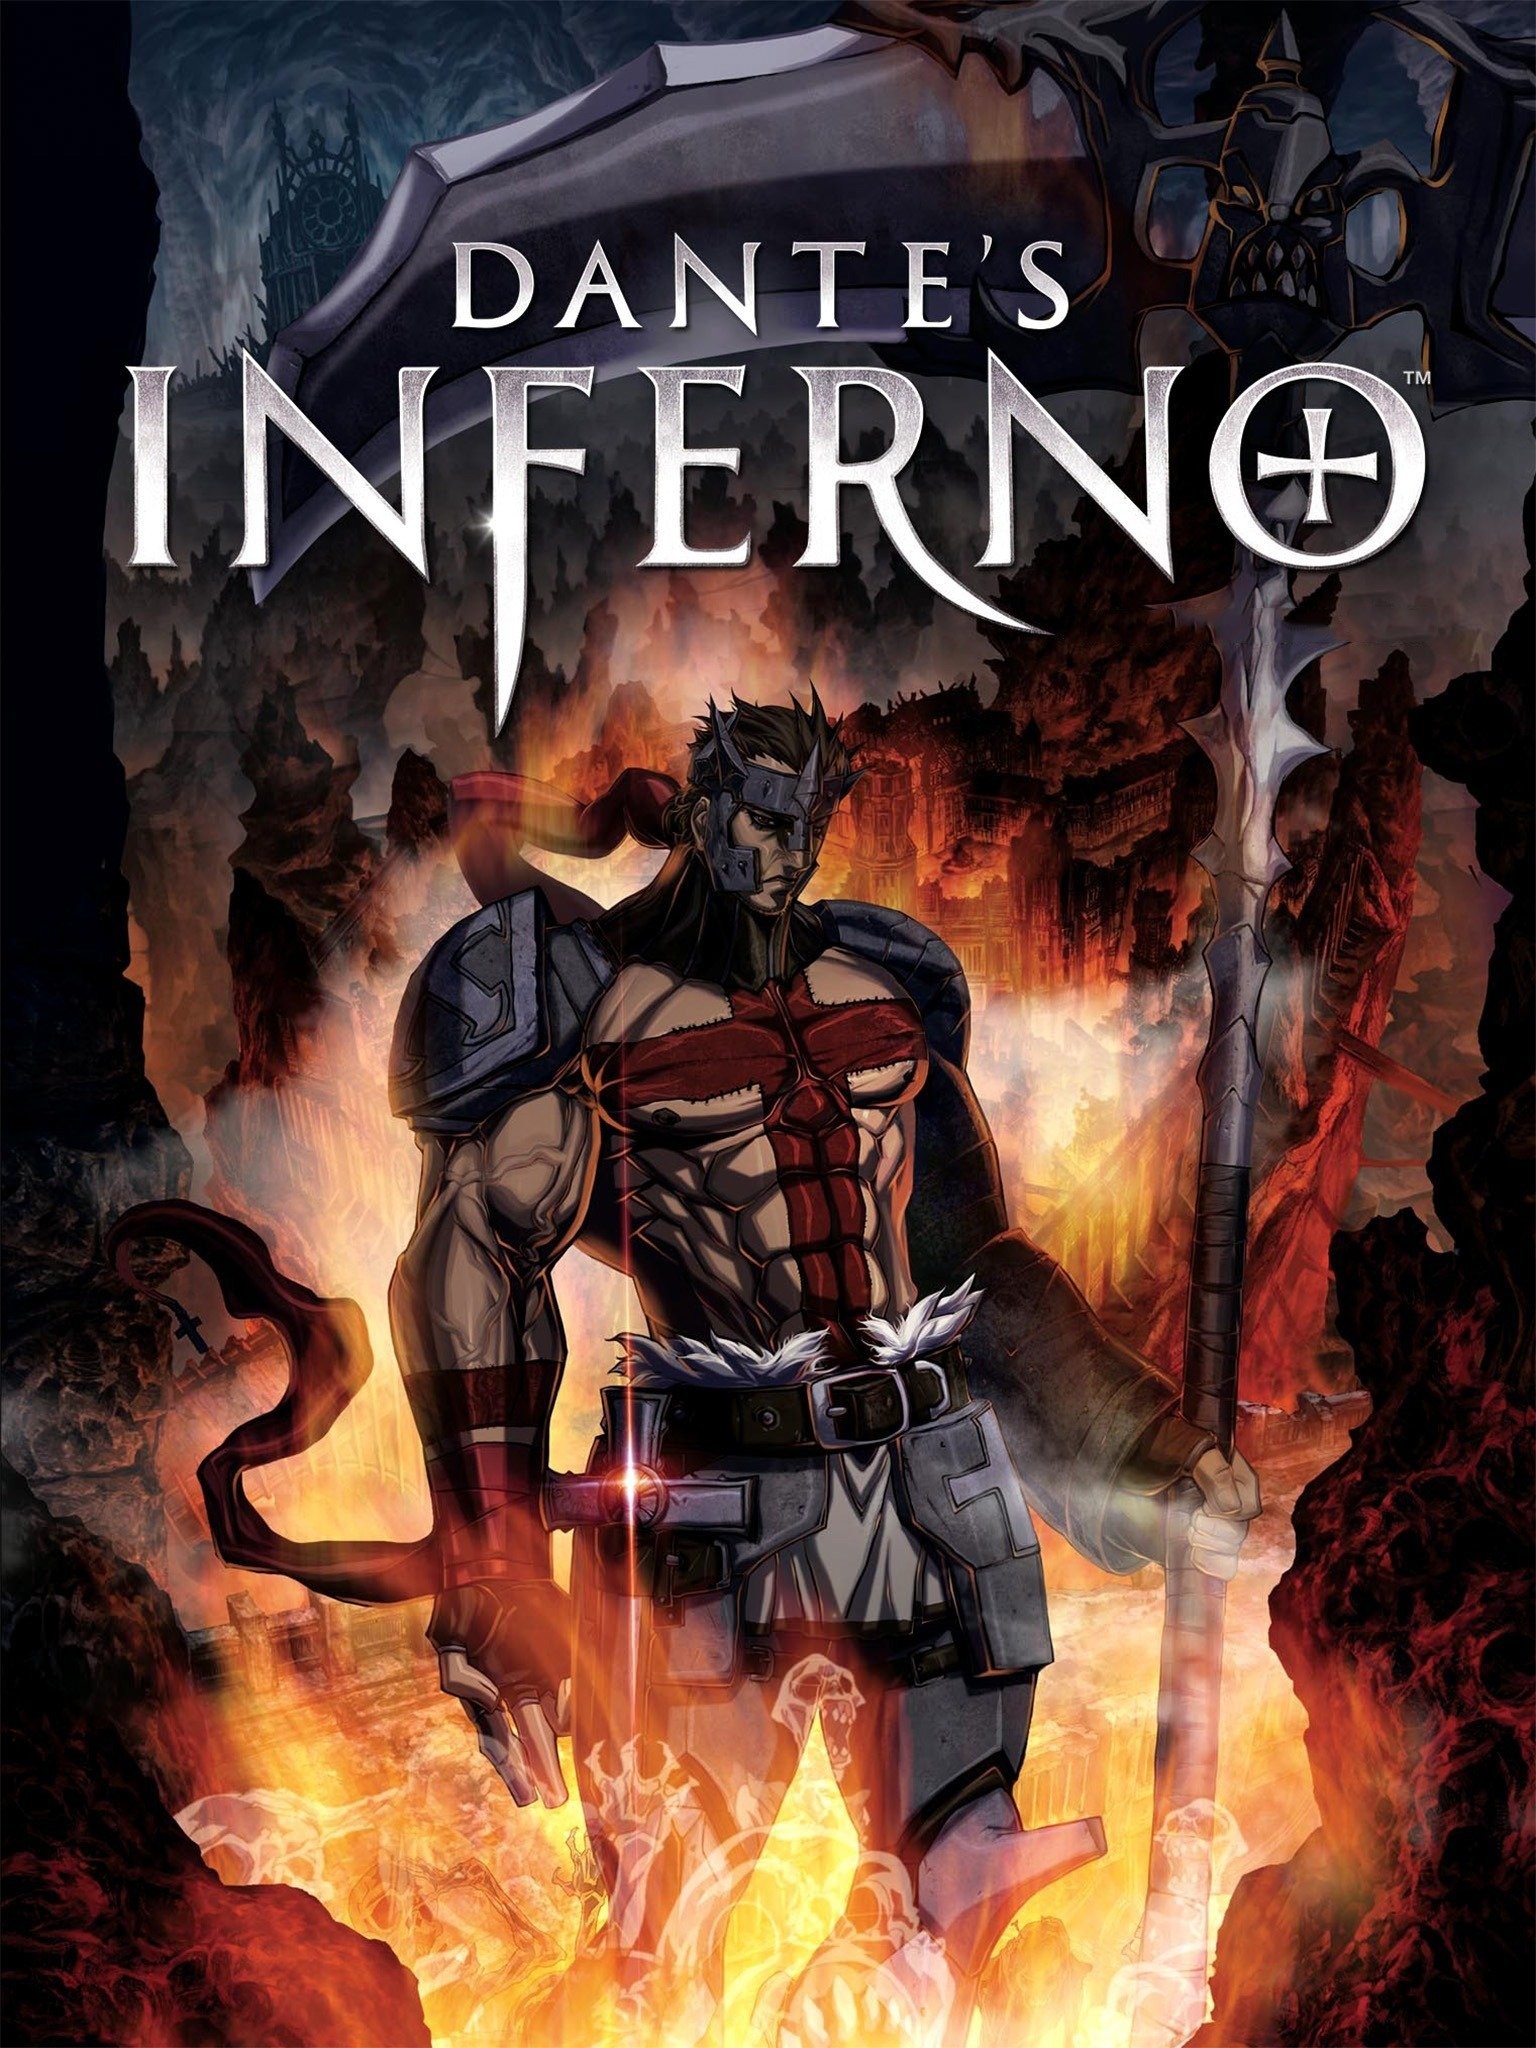 Visceral: No plans to do Dante's Inferno II